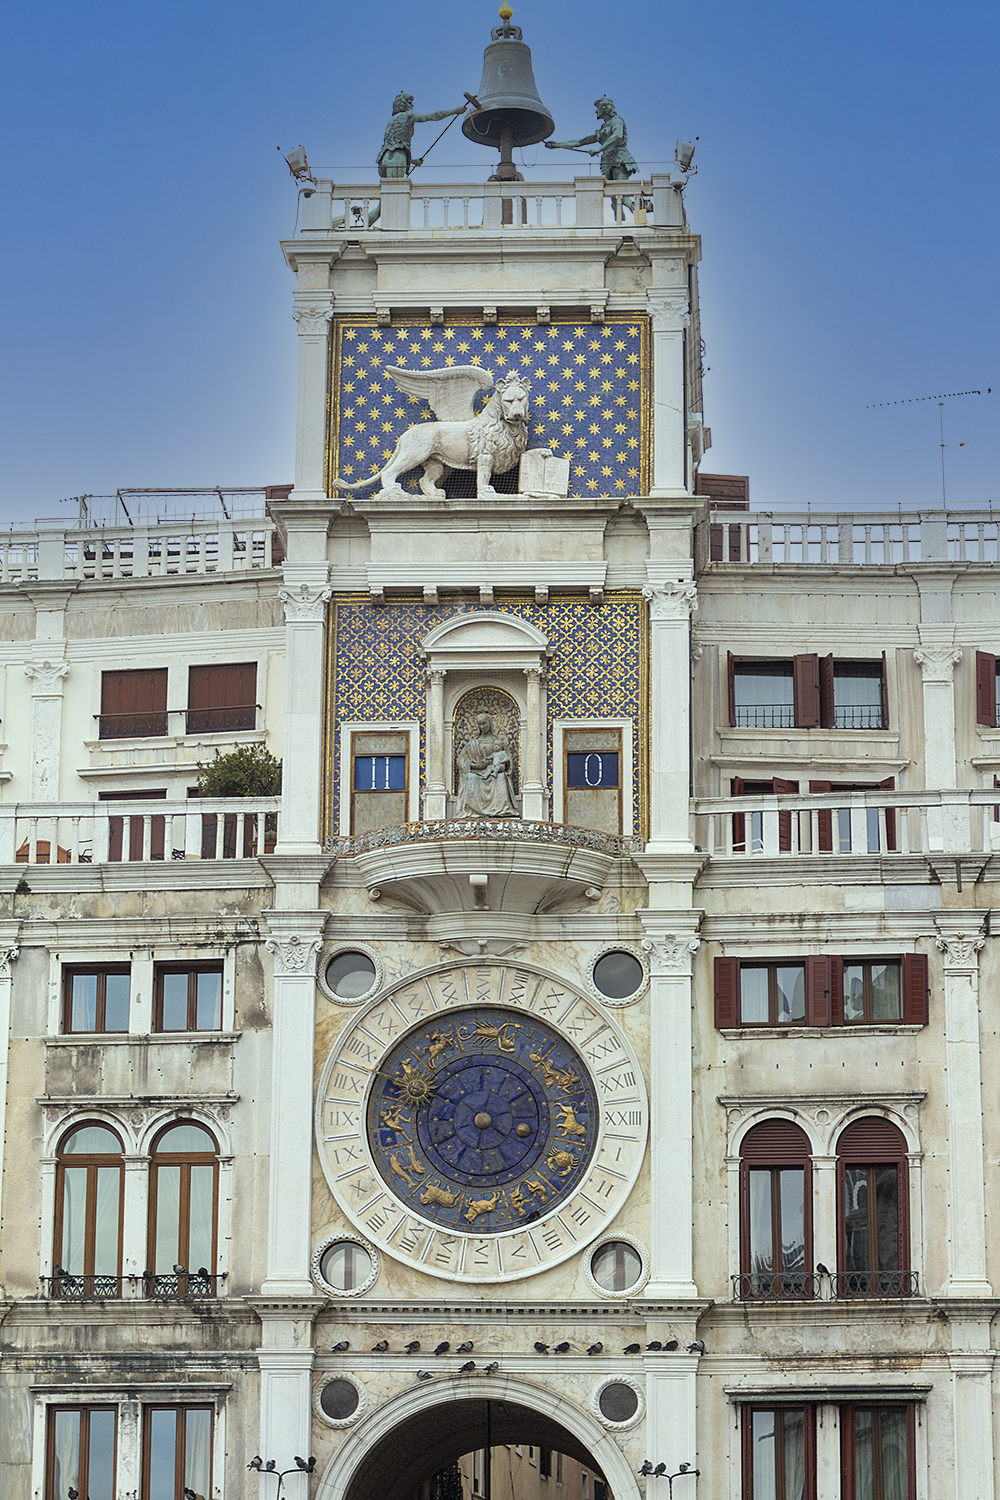 La torre dell'Orologio in Piazza San Marco a Venezia